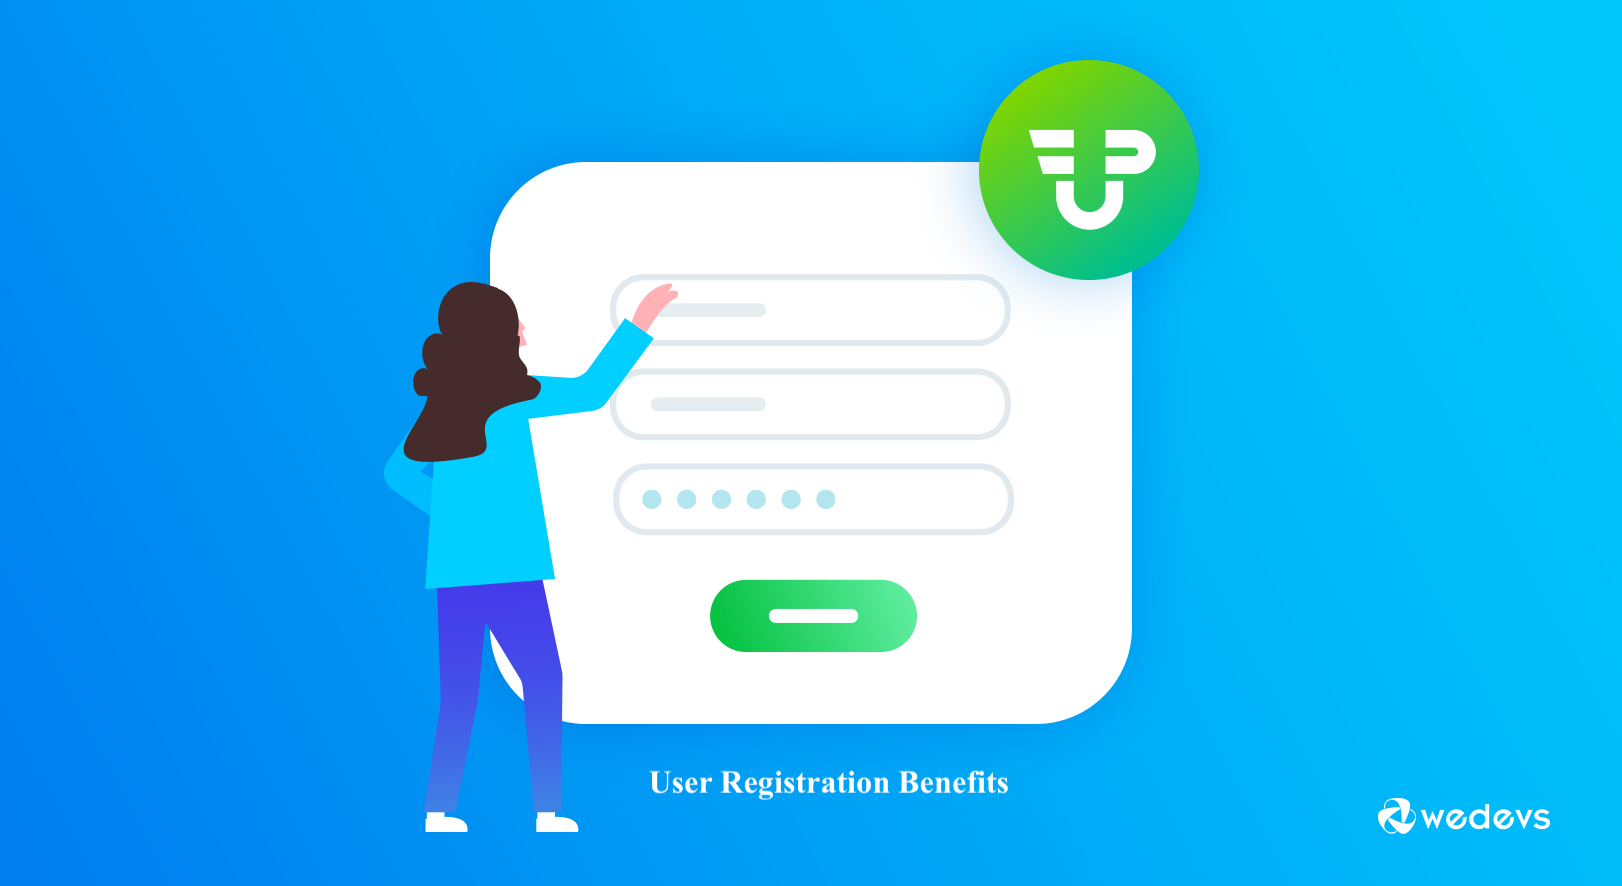 User Registration Benefits